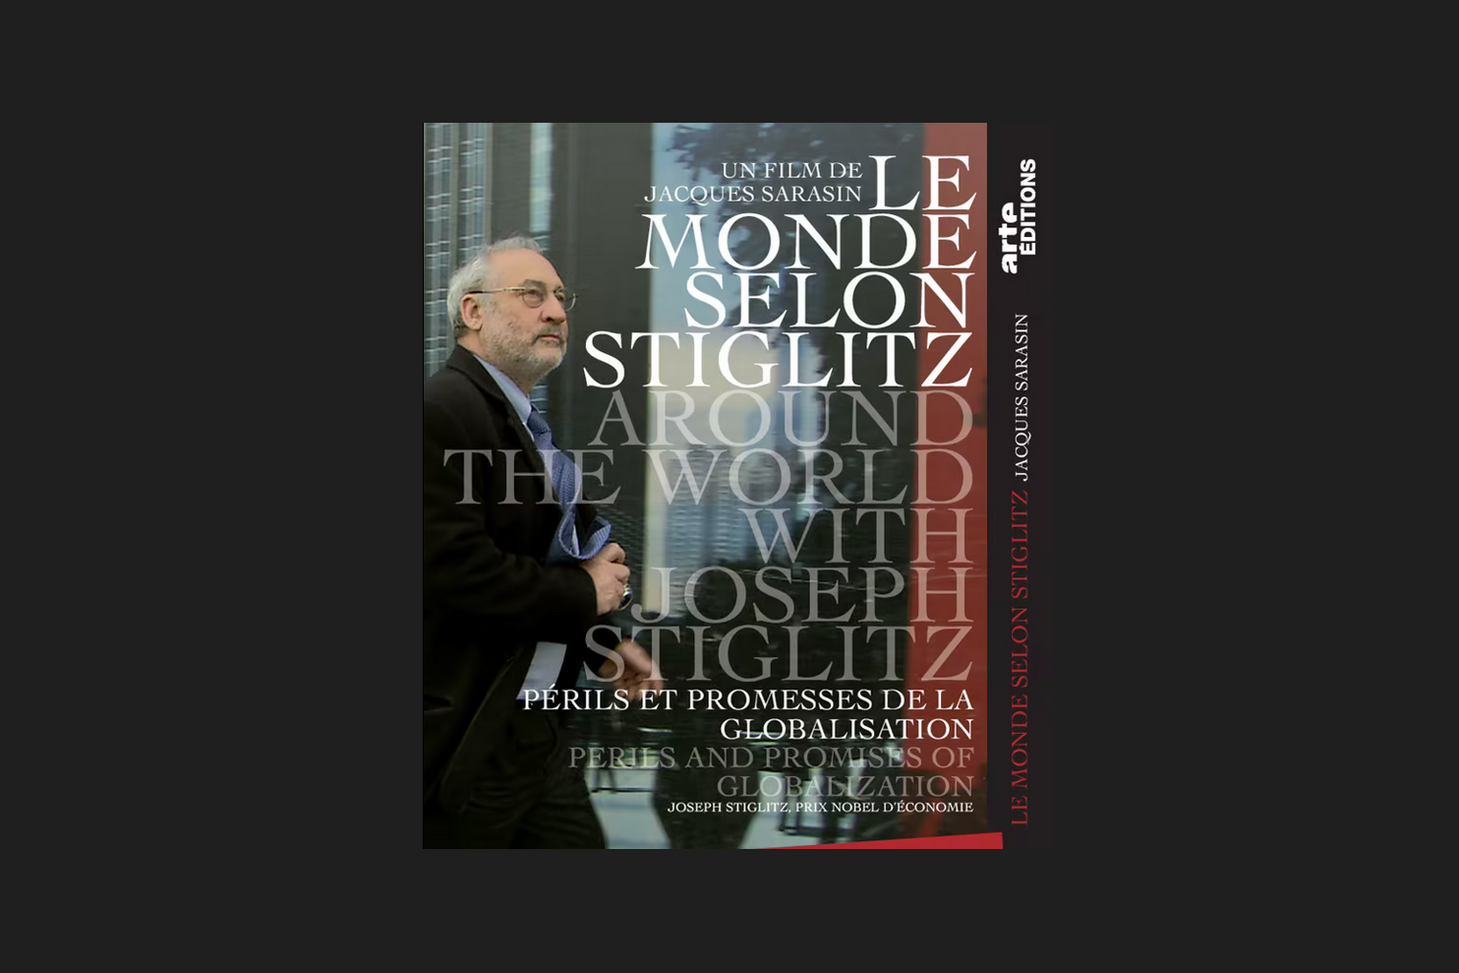 Book and Video by Joseph E. Stiglitz